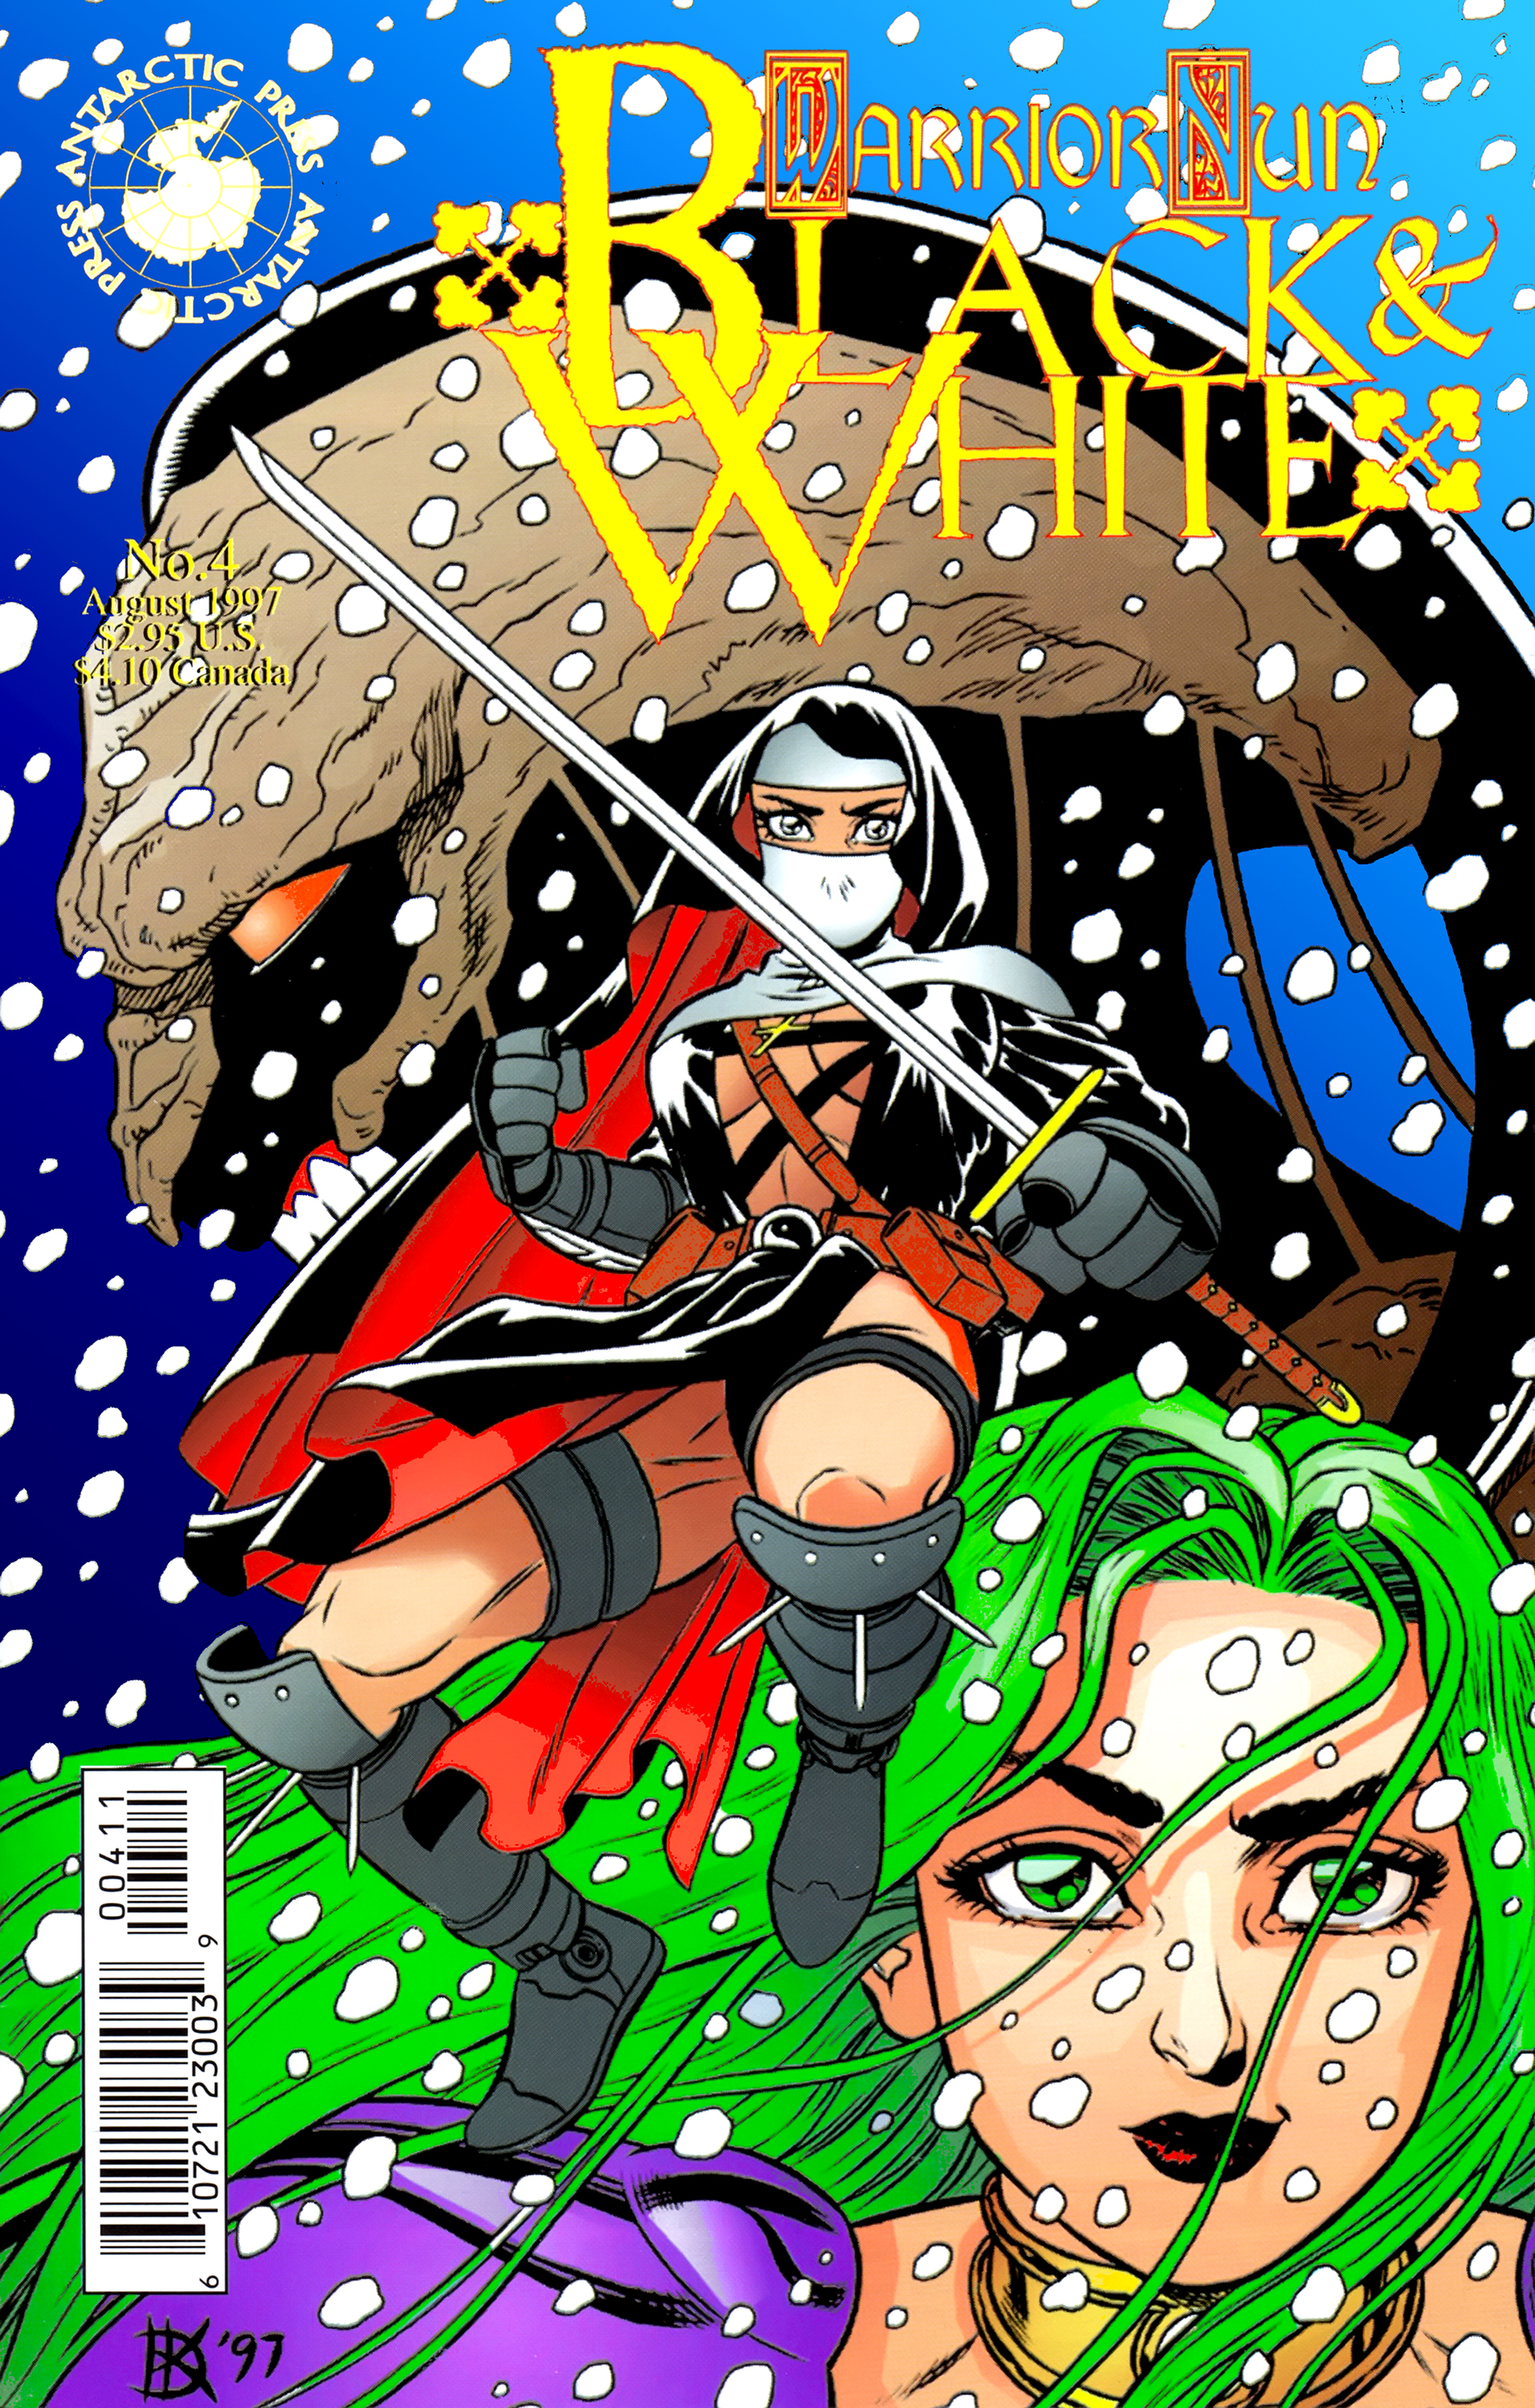 Read online Warrior Nun: Black & White comic -  Issue #4 - 1